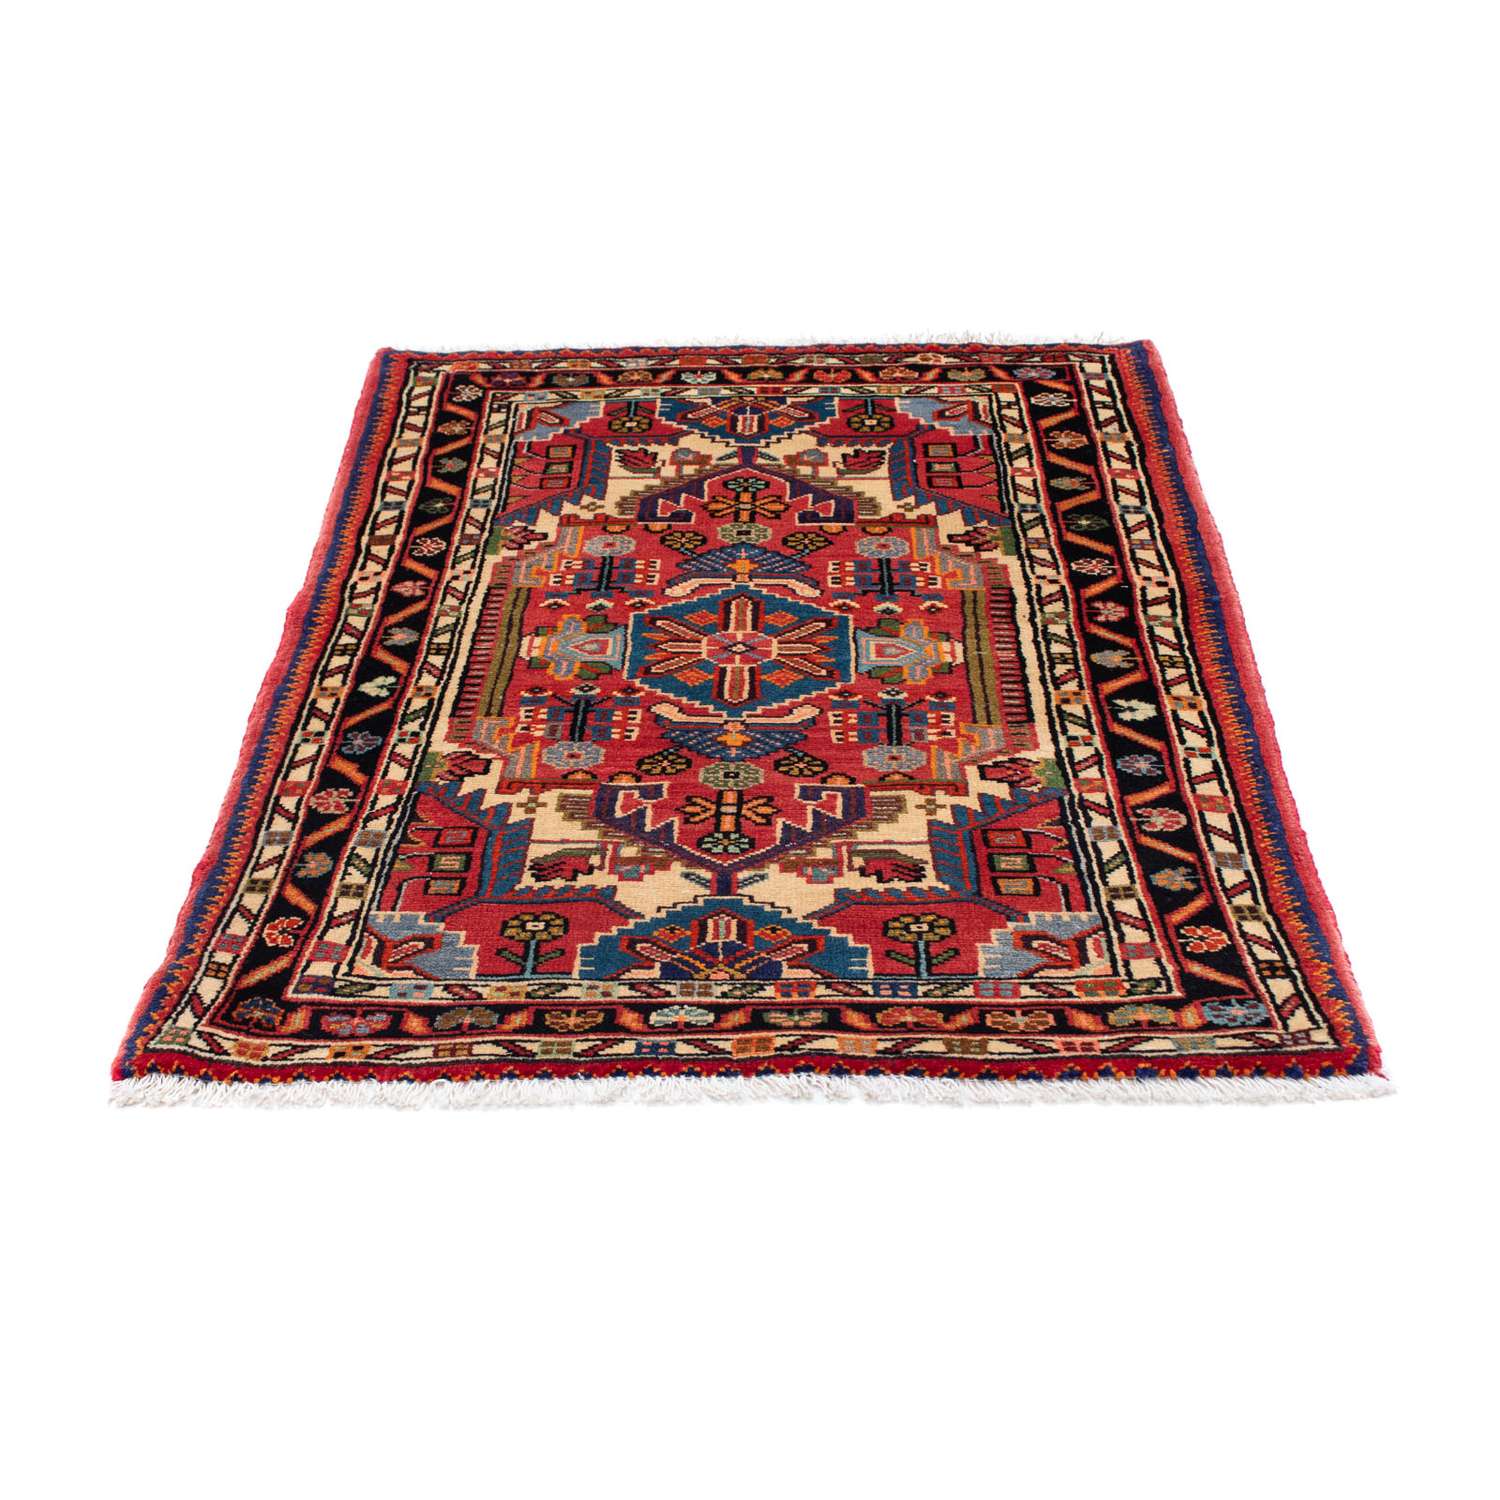 Persisk teppe - Nomadisk - 125 x 91 cm - rød